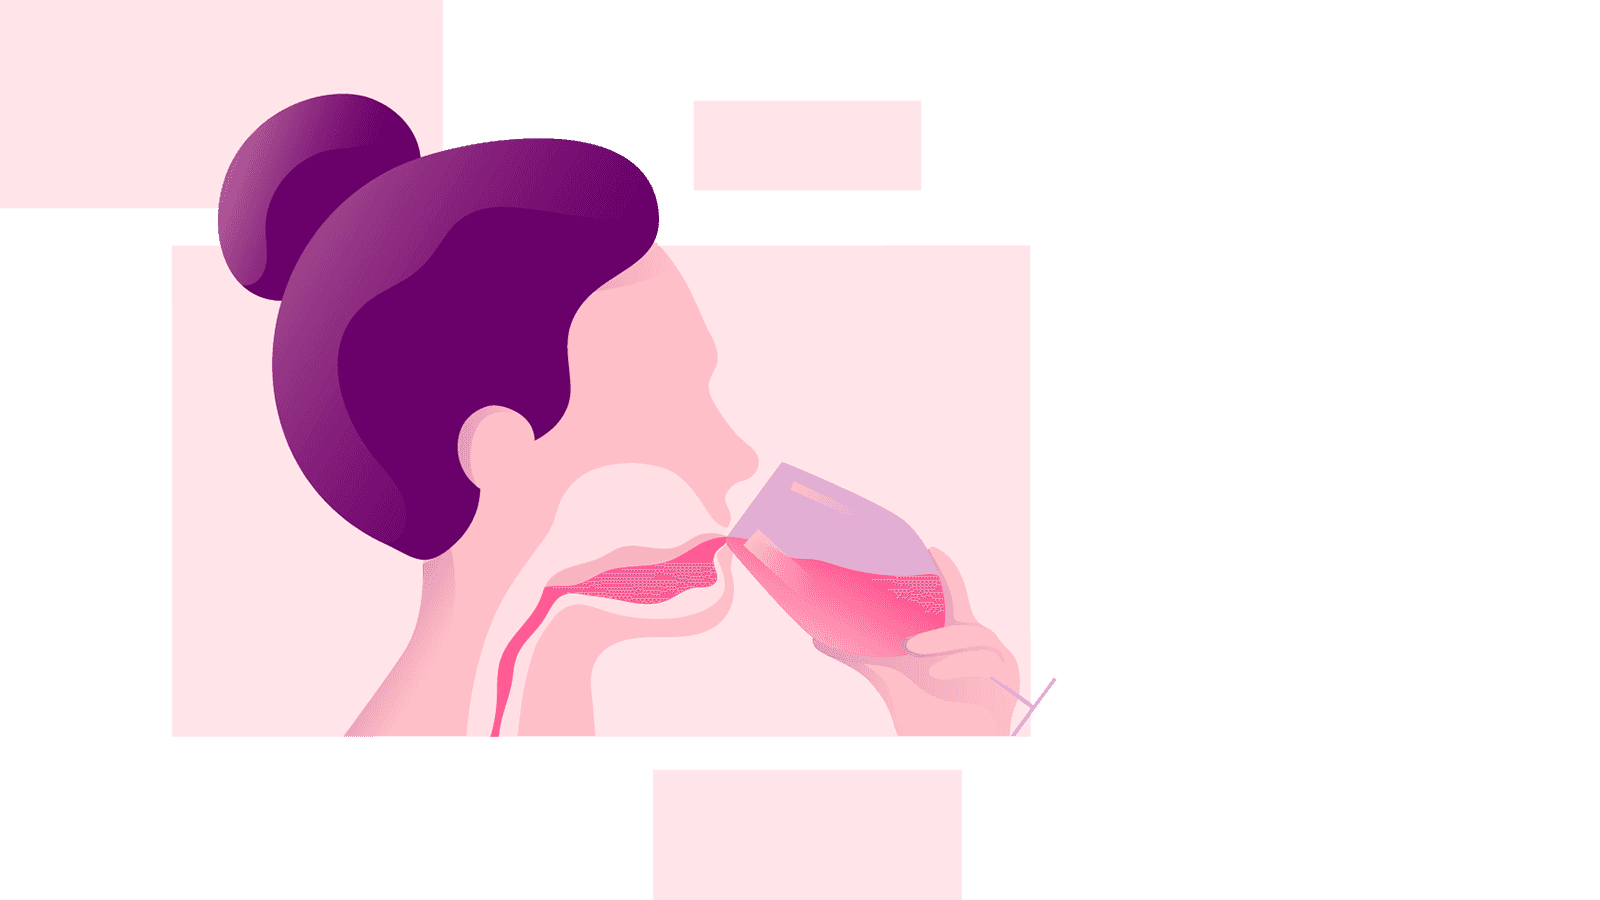 사람이 입으로 마신 액체에 포함된 알코올이 목구멍을 통과하는 그림.